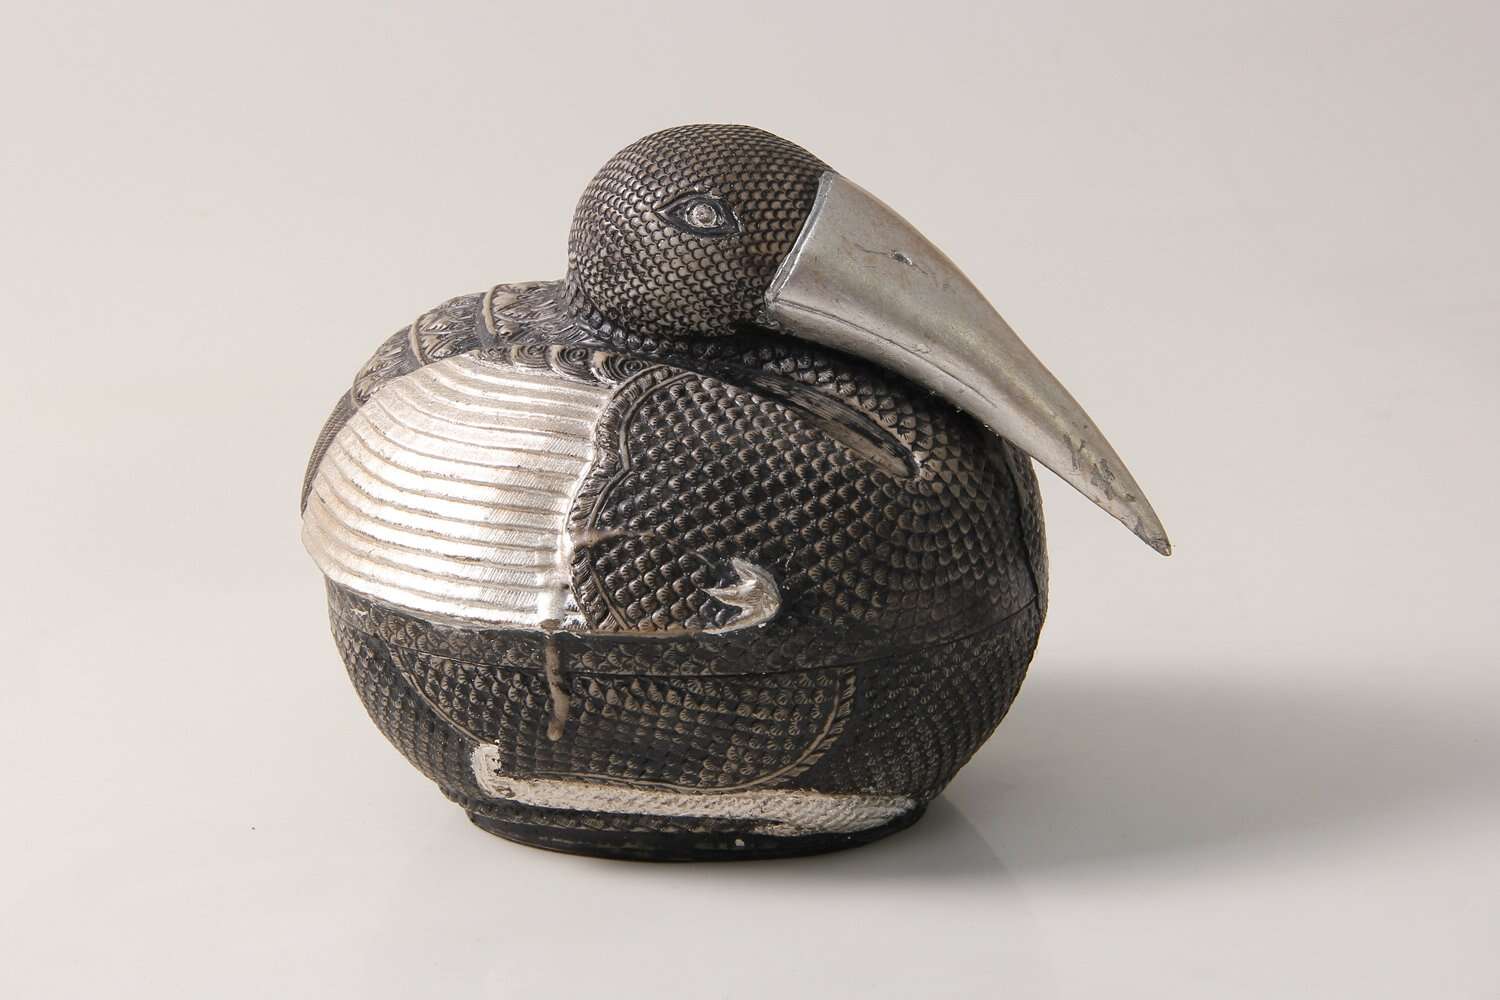 Gorgeous silver bird sculpture interior design gift present